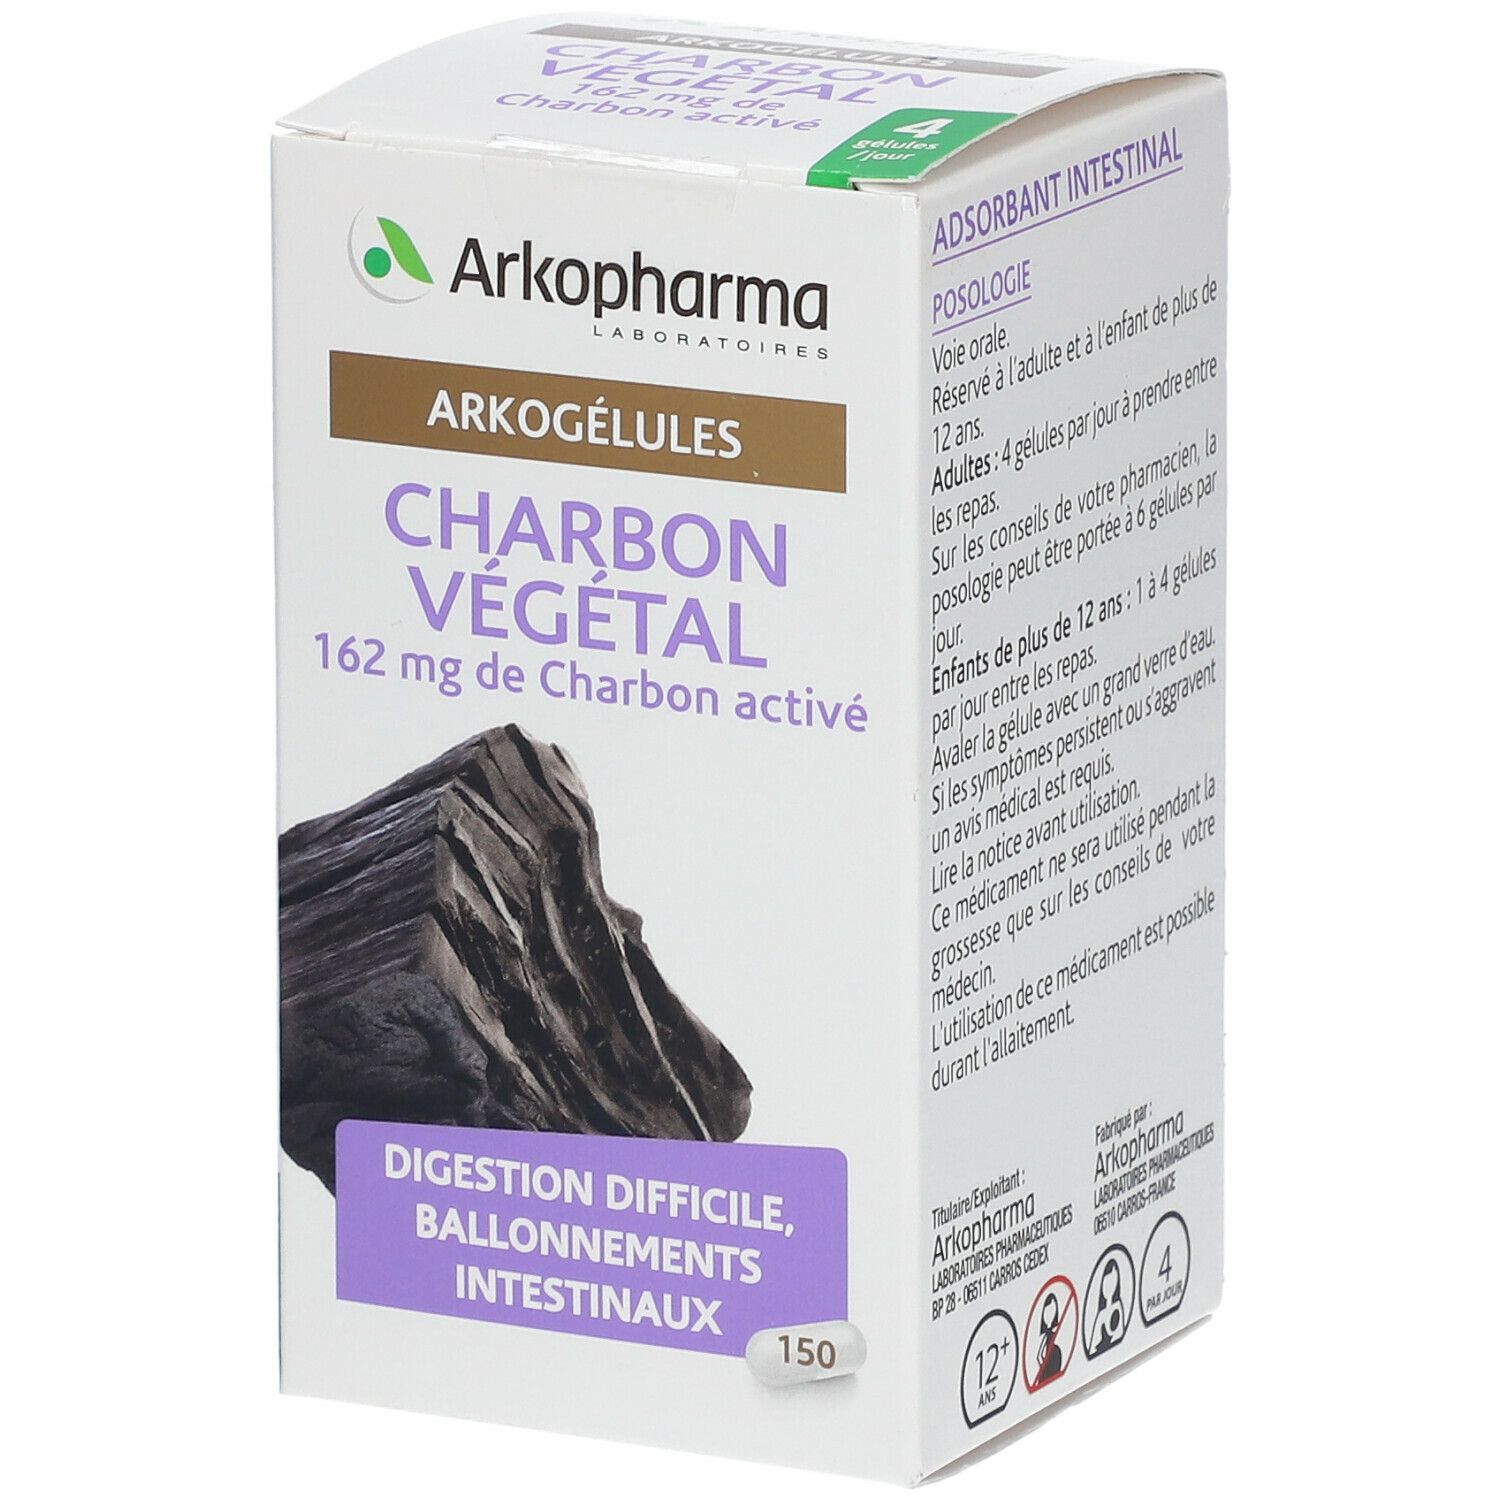 Arkopharma Arkogélules Charbon Végétal